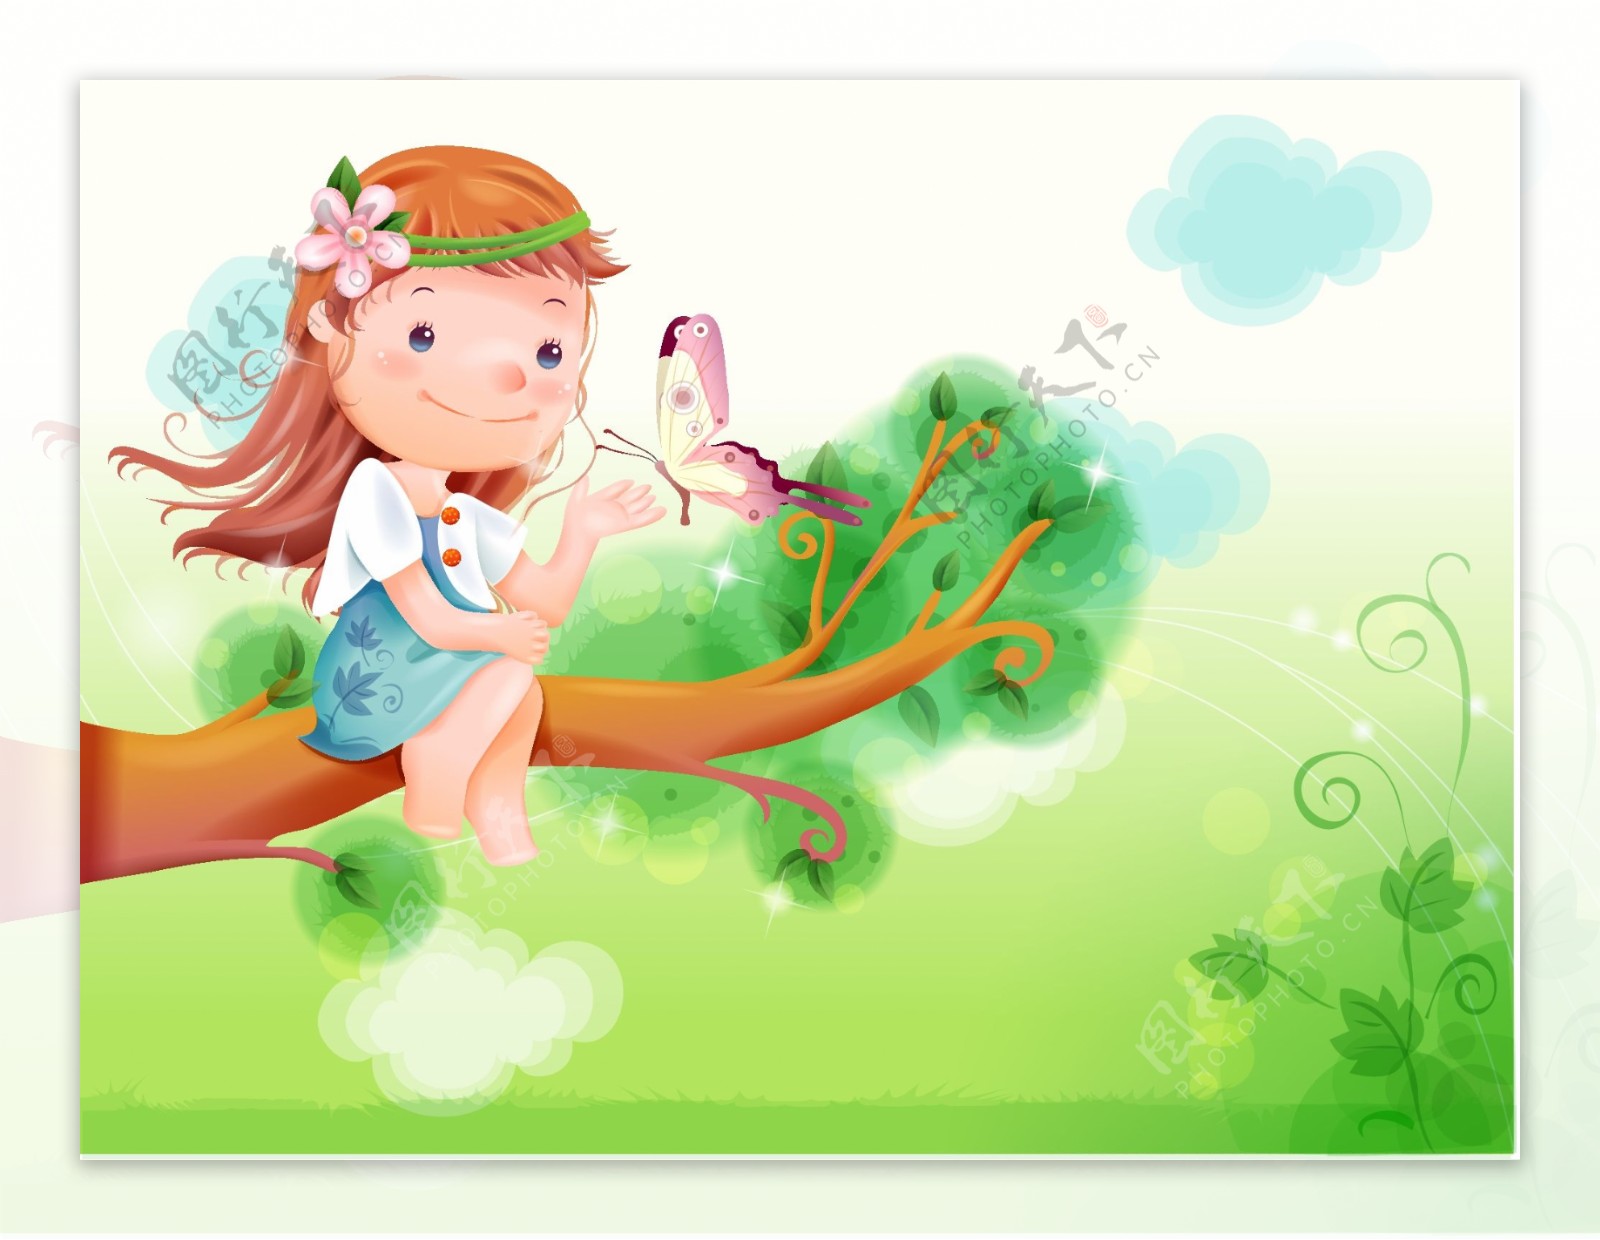 坐在树上逗蝴蝶的小女孩